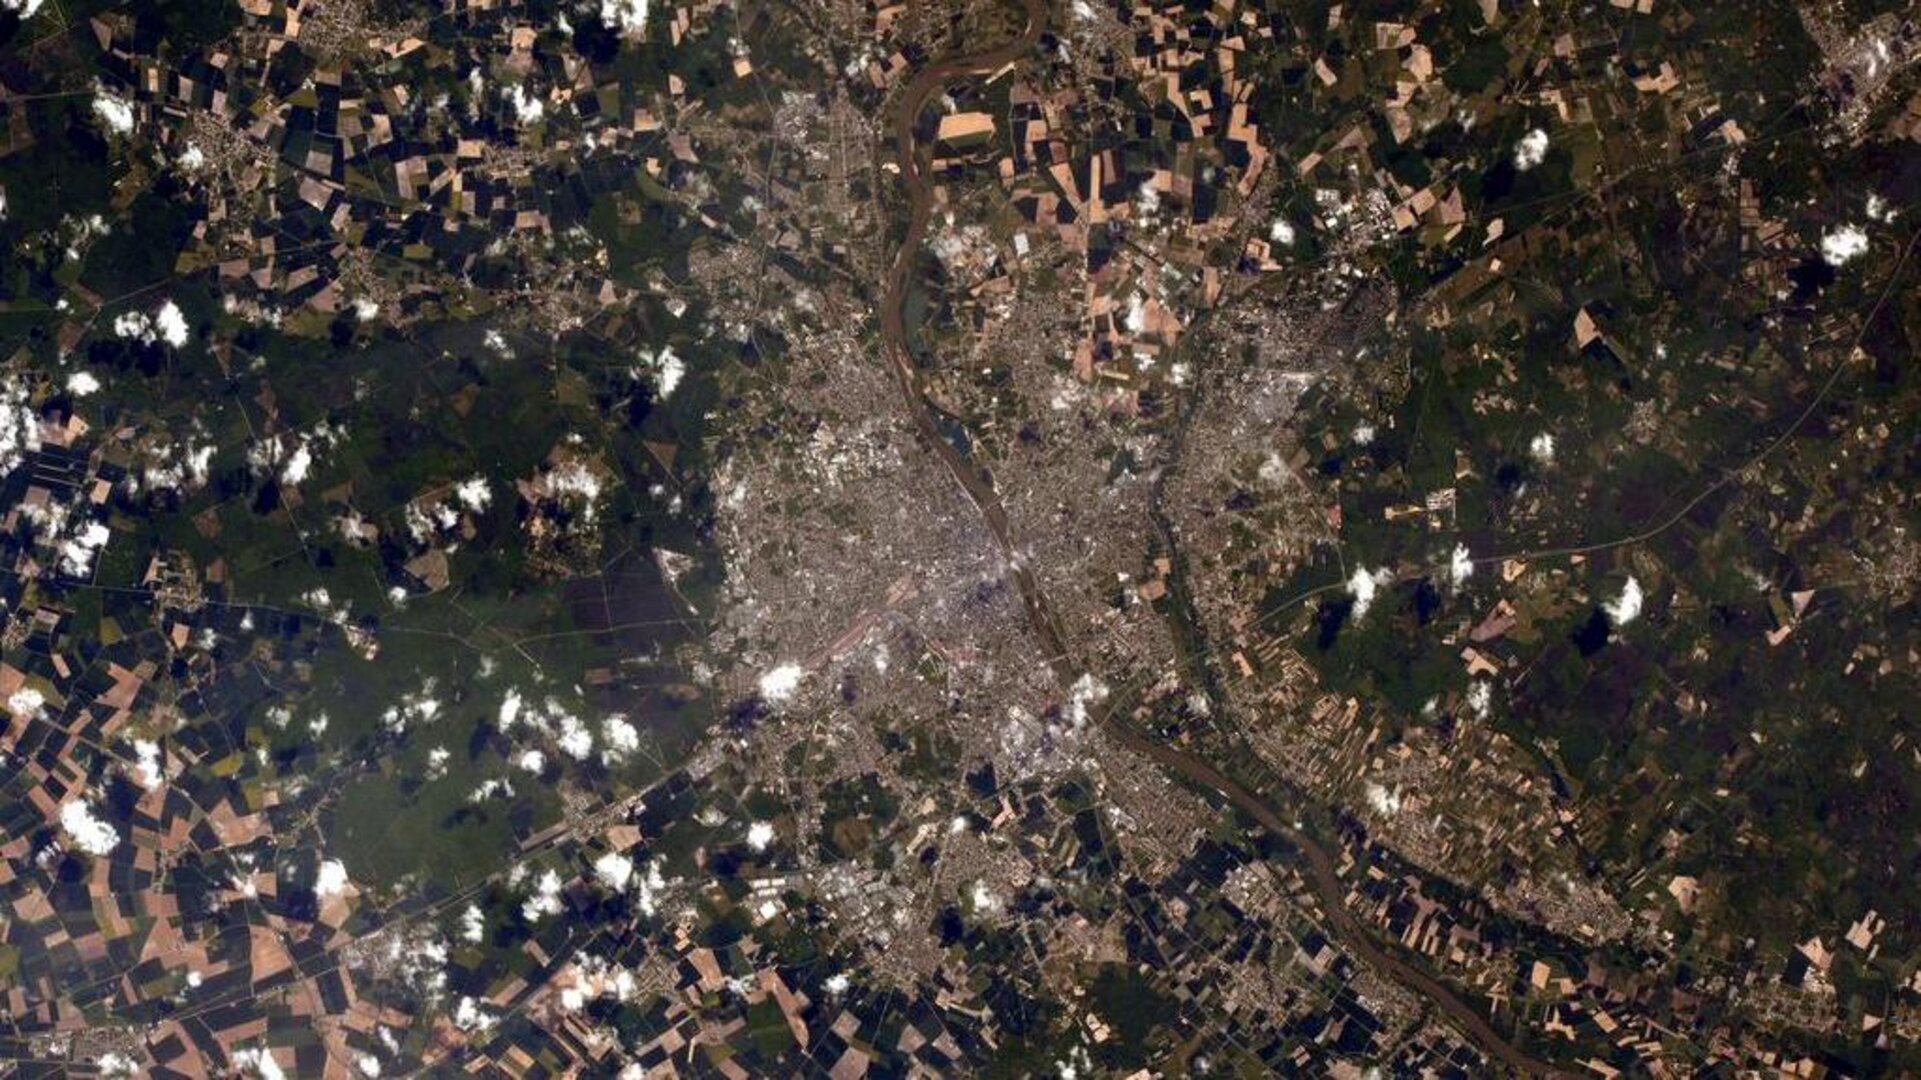 La ville d'Orléans vue depuis la Station spatiale internationale.